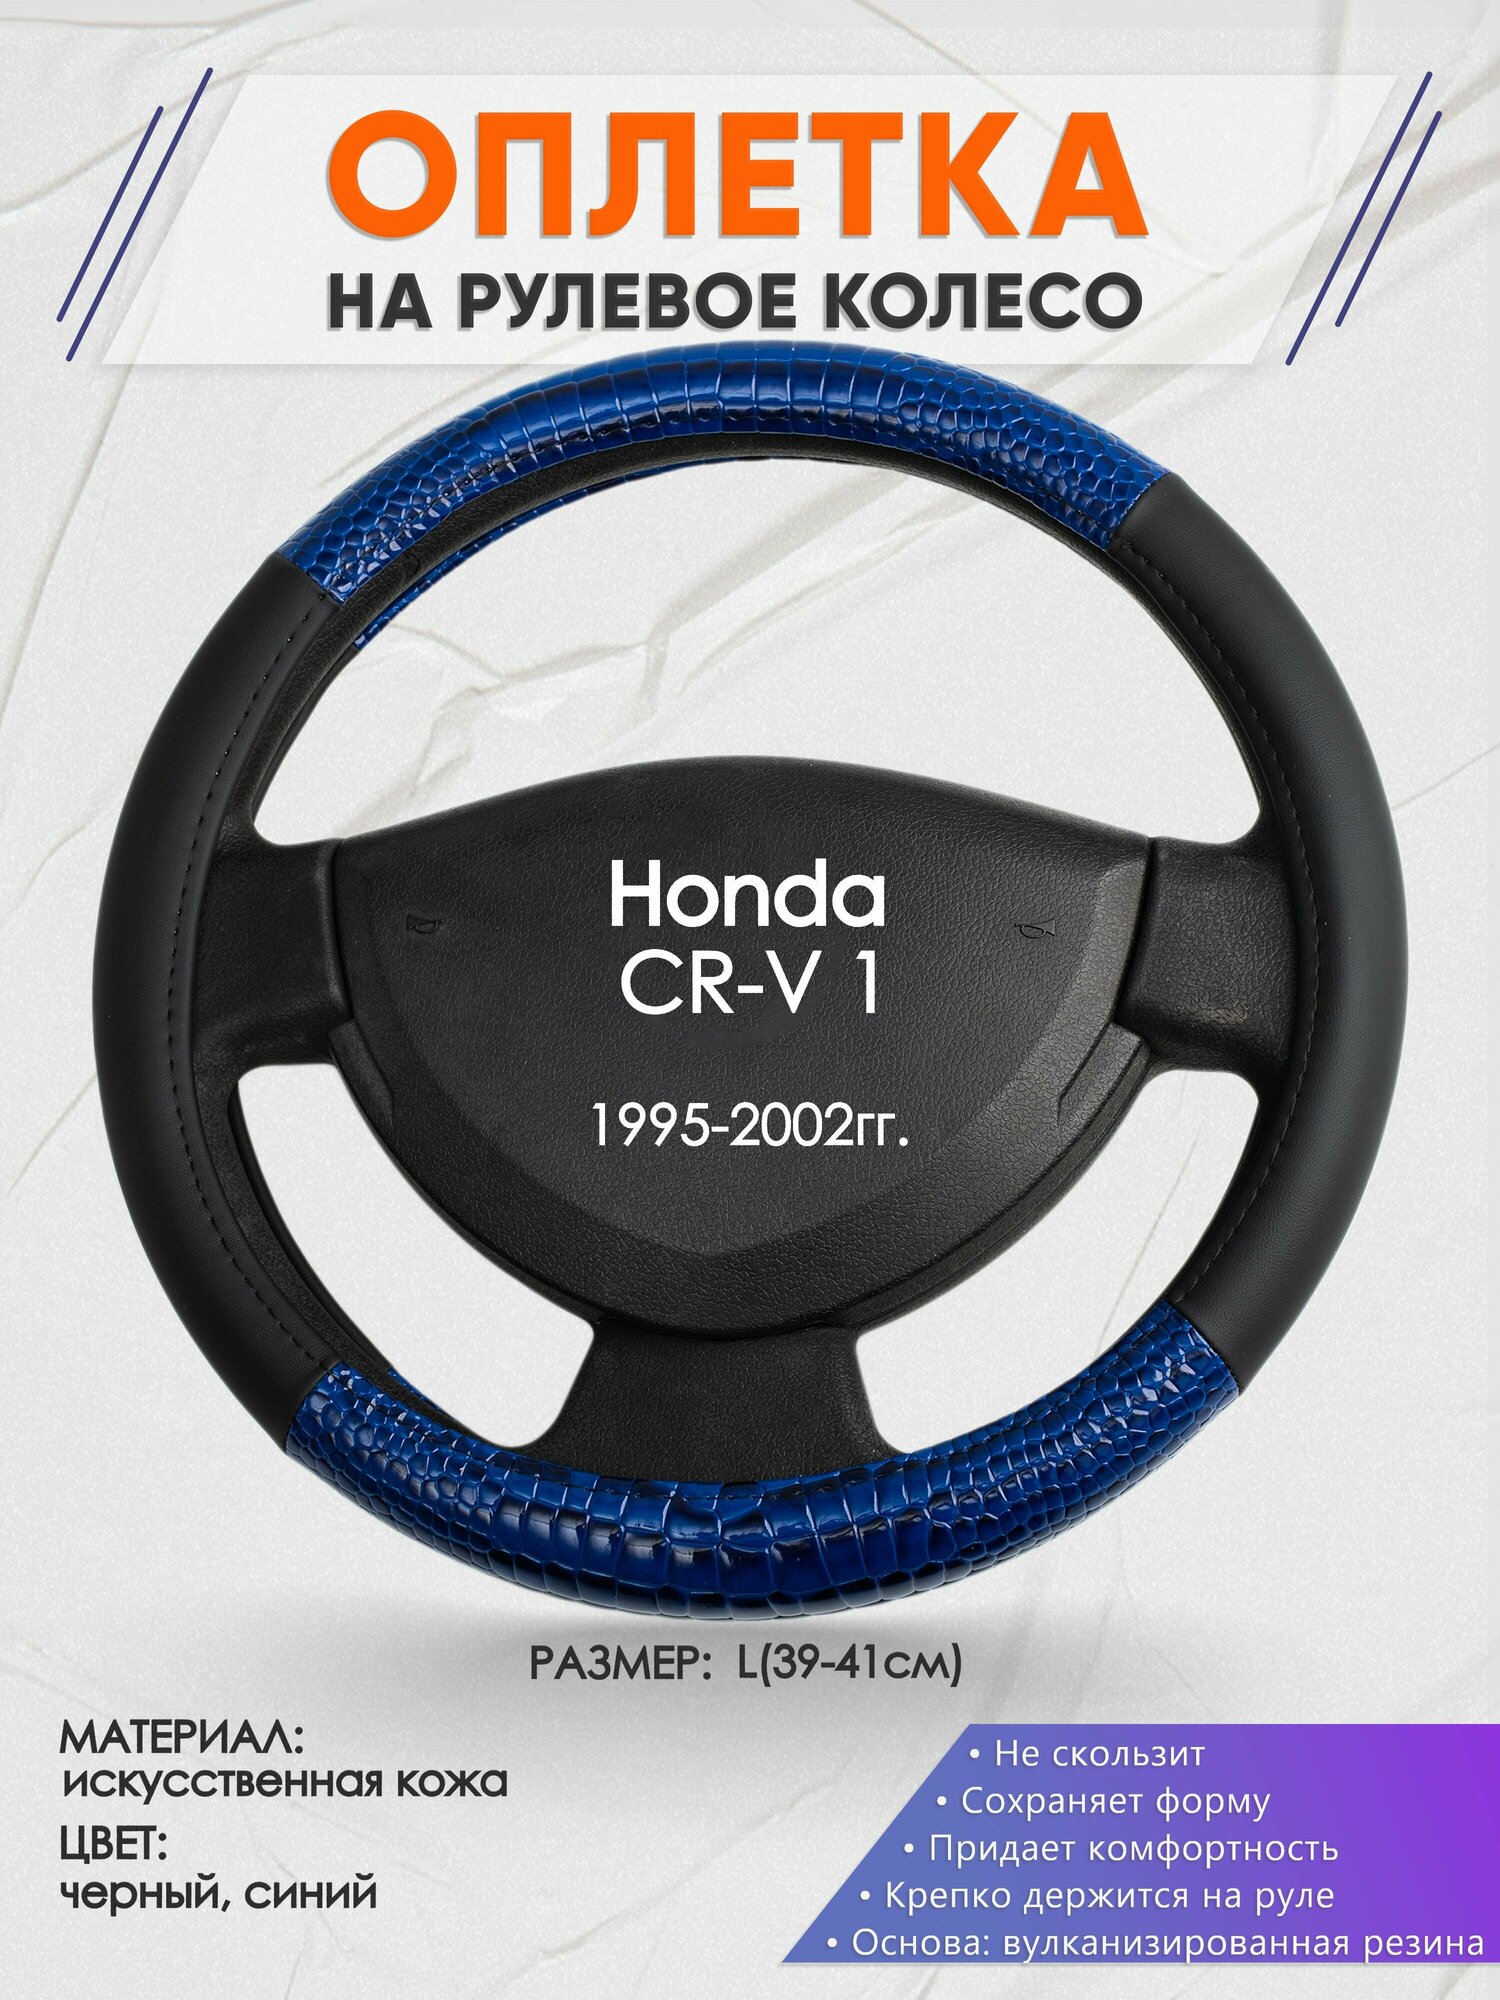 Оплетка на руль для Honda CR-V 1(Хонда срв 1) 1995-2002, L(39-41см), Искусственная кожа 82